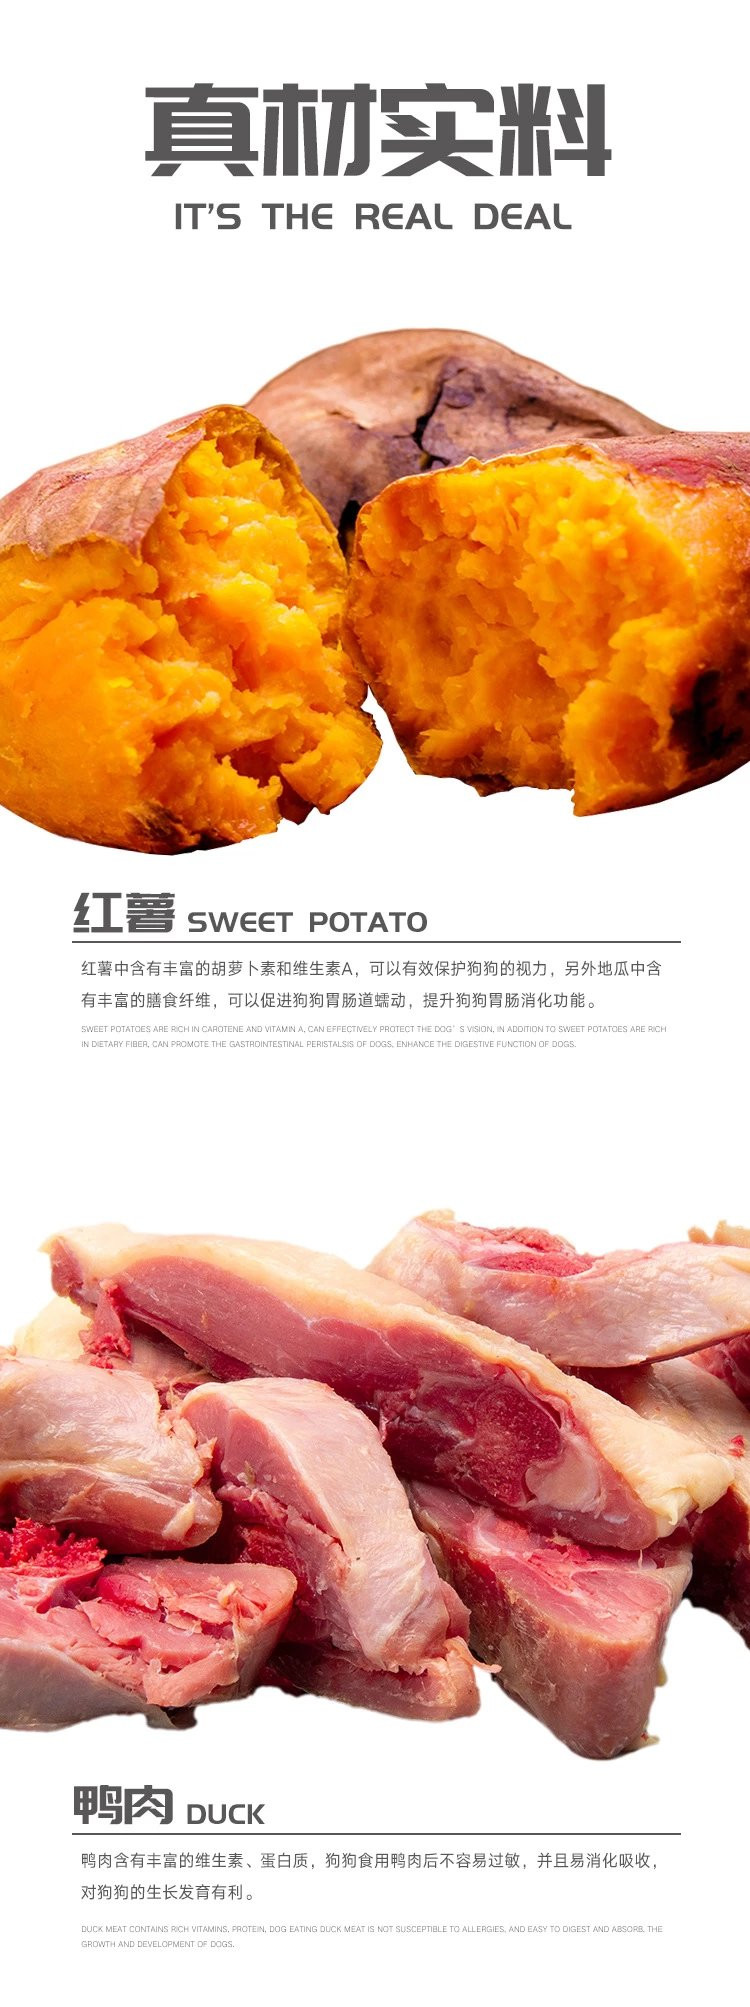 图石果记 【邮乐特卖】宠物狗狗训犬奖励营养零食鸭肉绕红薯条